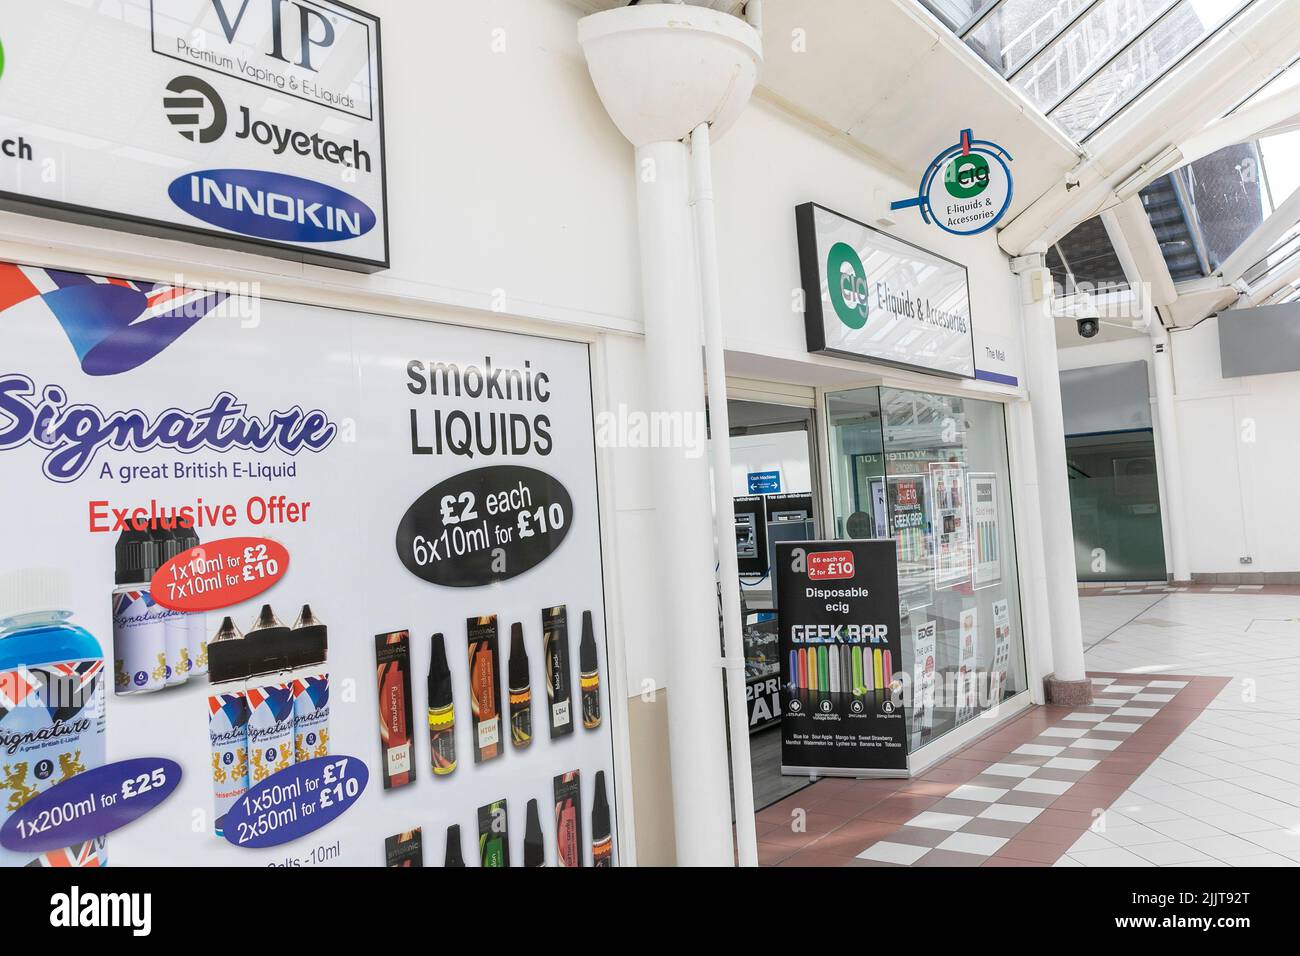 VAPE et vapoing shop à Bury Manchester, vendant des liquides de vape et des cigarettes électroniques, Angleterre, Royaume-Uni Banque D'Images